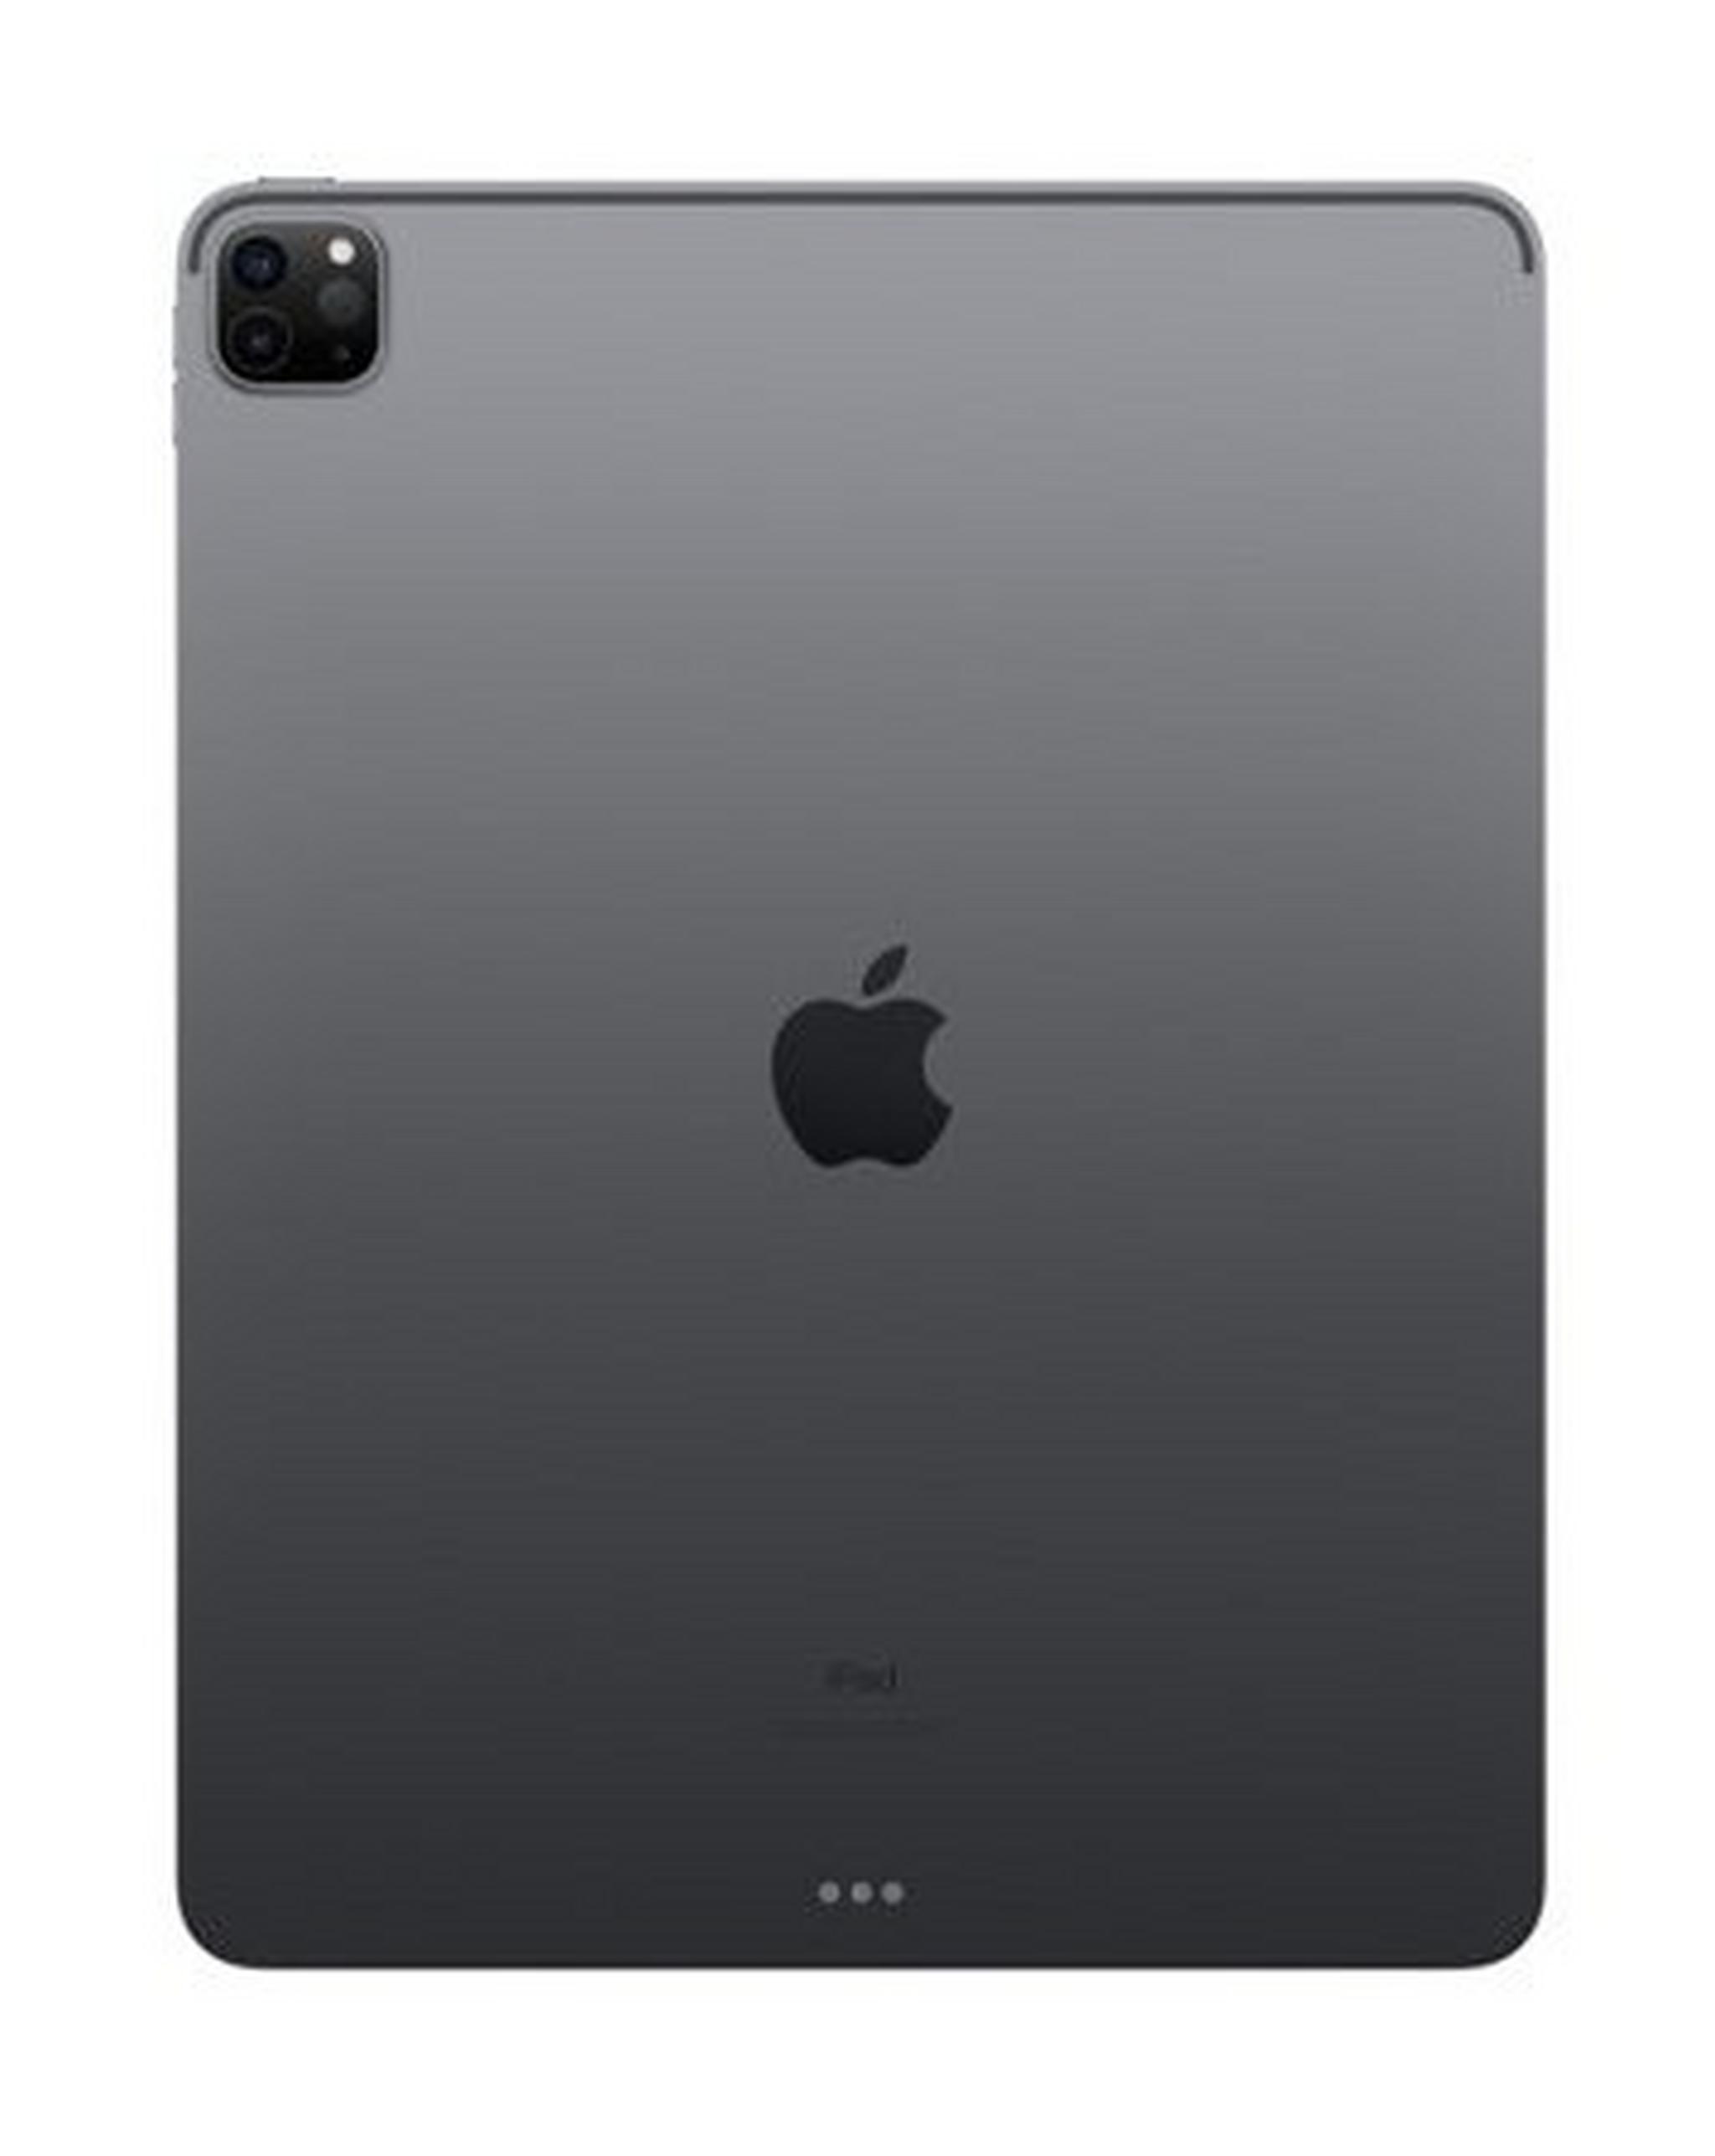 Apple IPad Pro (2020) 12.9-inch  1TB WiFi – Space Grey